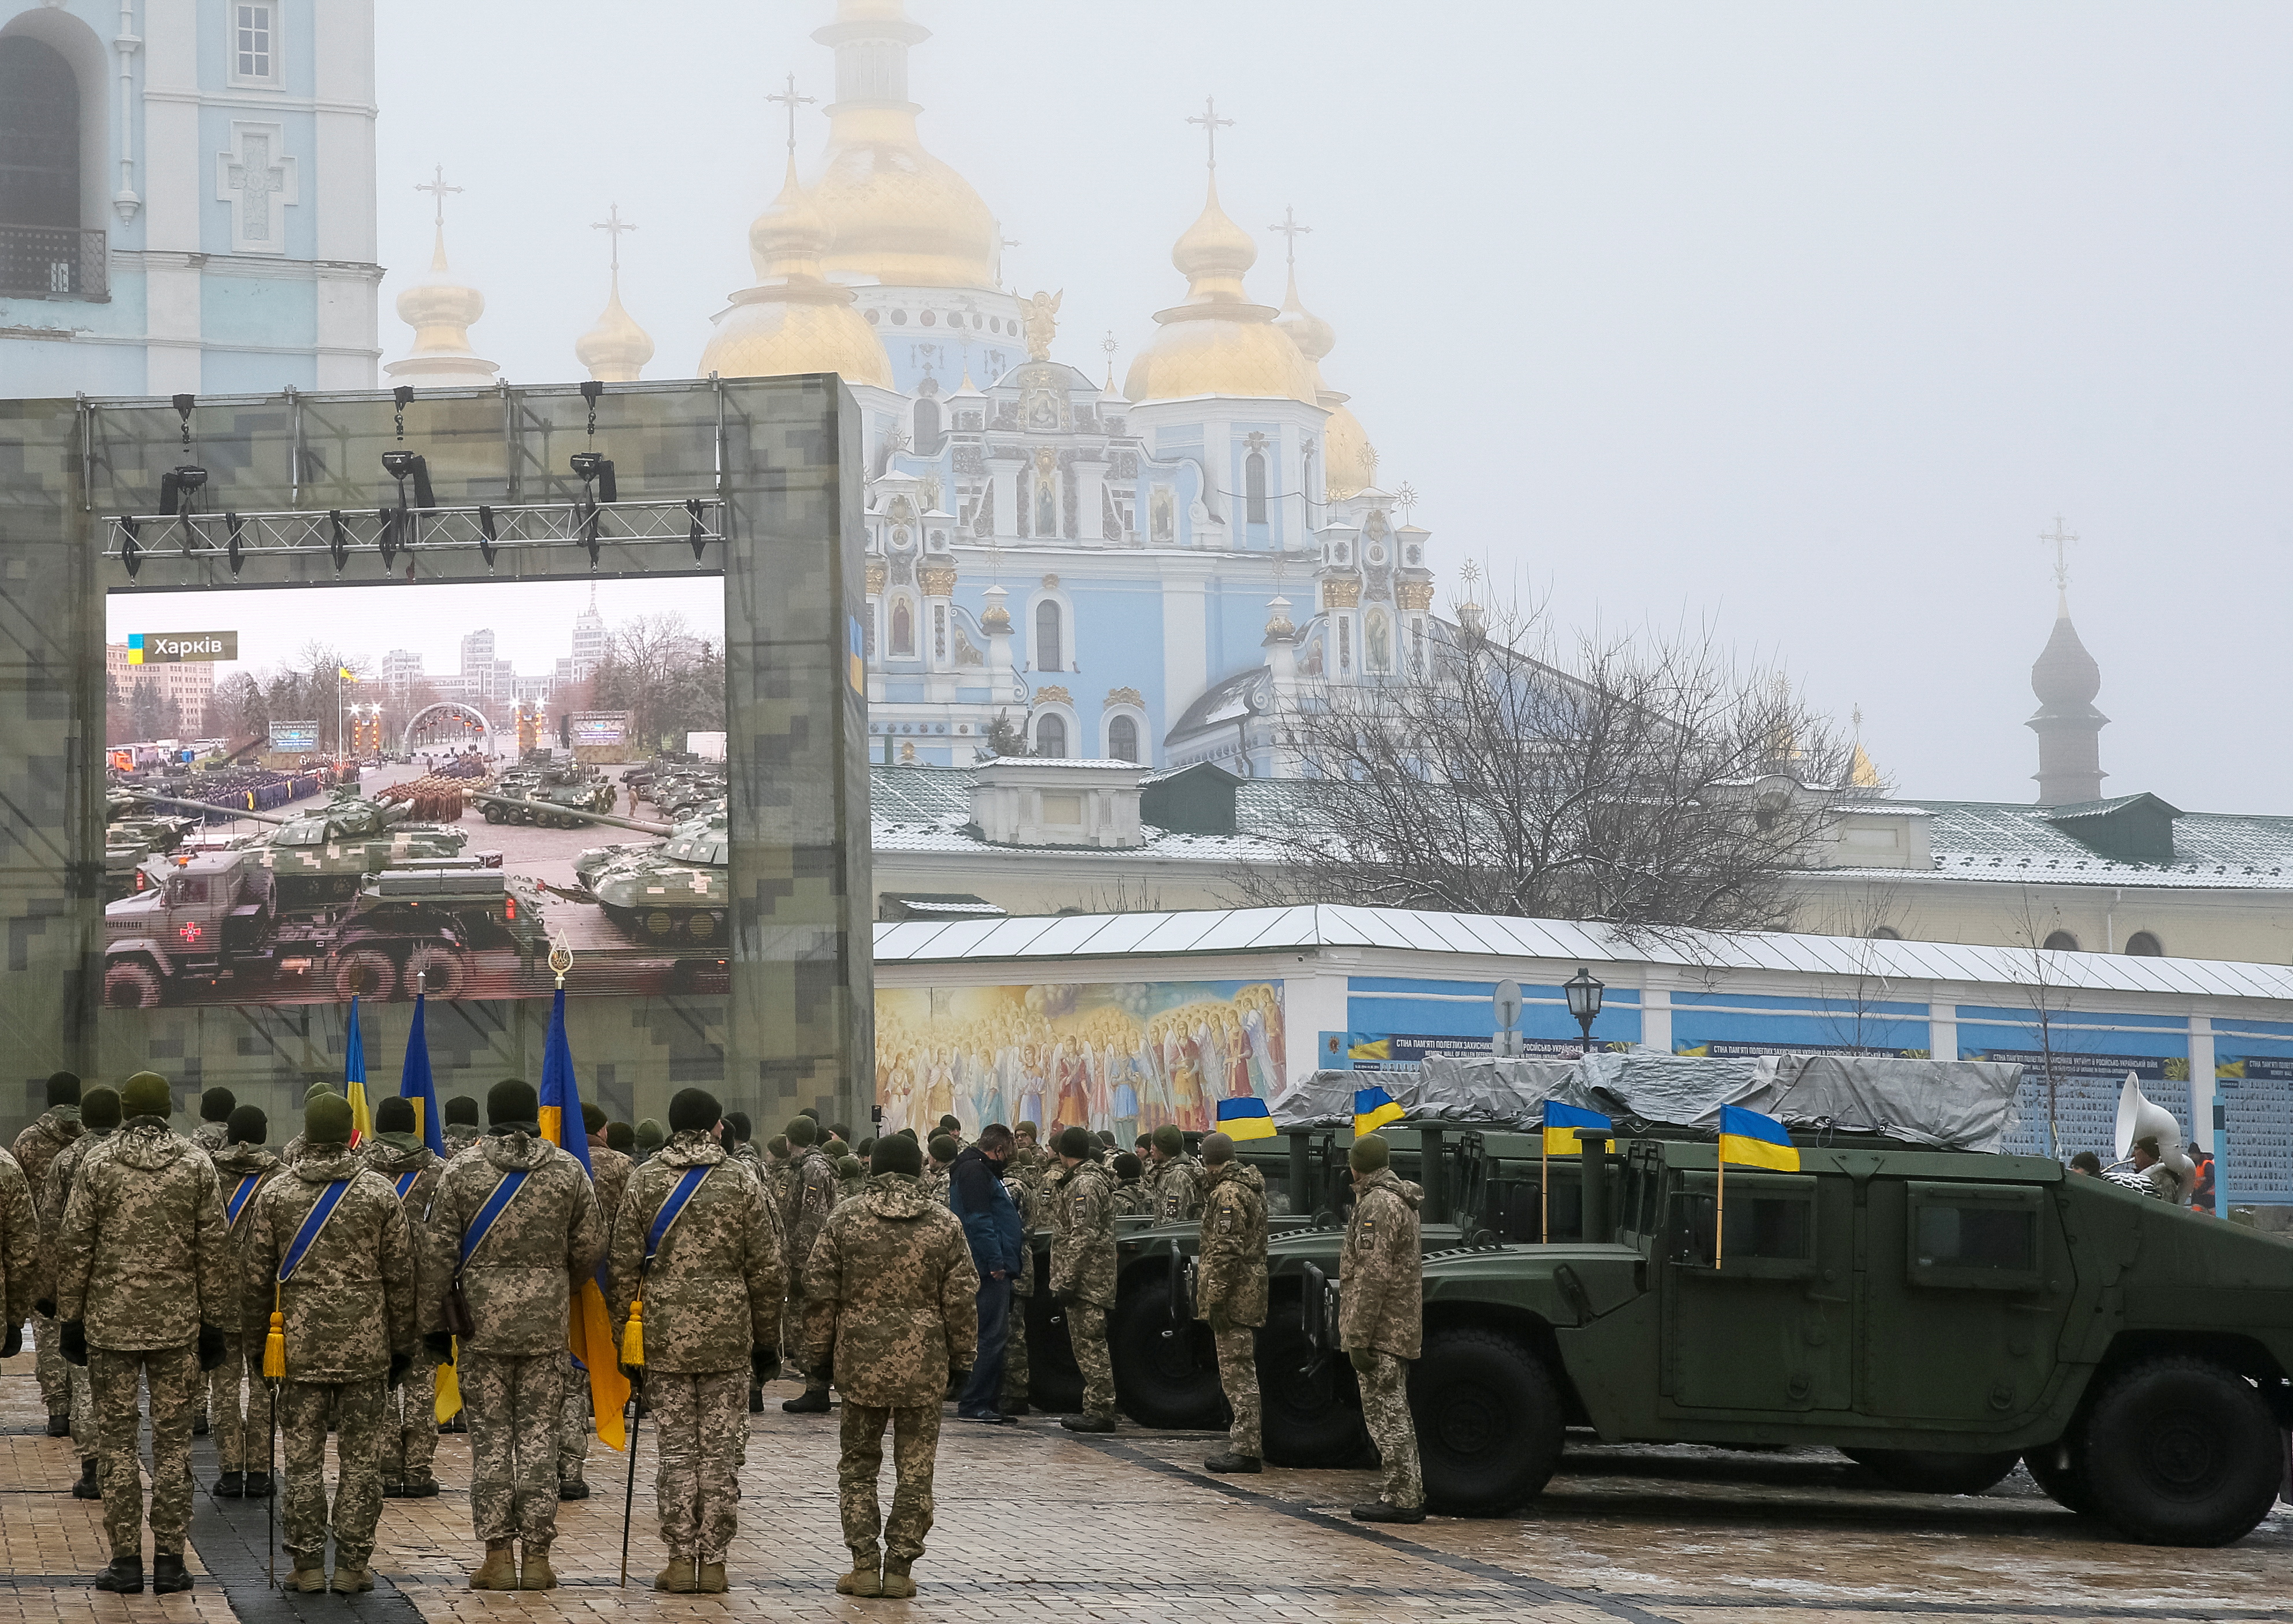 Ushtarët ukrainas marrin pjesë në një provë të një ceremonie zyrtare për dorëzimin e tankeve, transportuesve të personelit të blinduar dhe automjeteve ushtarake tek Forcat e Armatosura të Ukrainës ndërsa vendi feston Ditën e Ushtrisë në Kiev, Ukrainë, 6 dhjetor 2021. REUTERS/Gleb Garanich